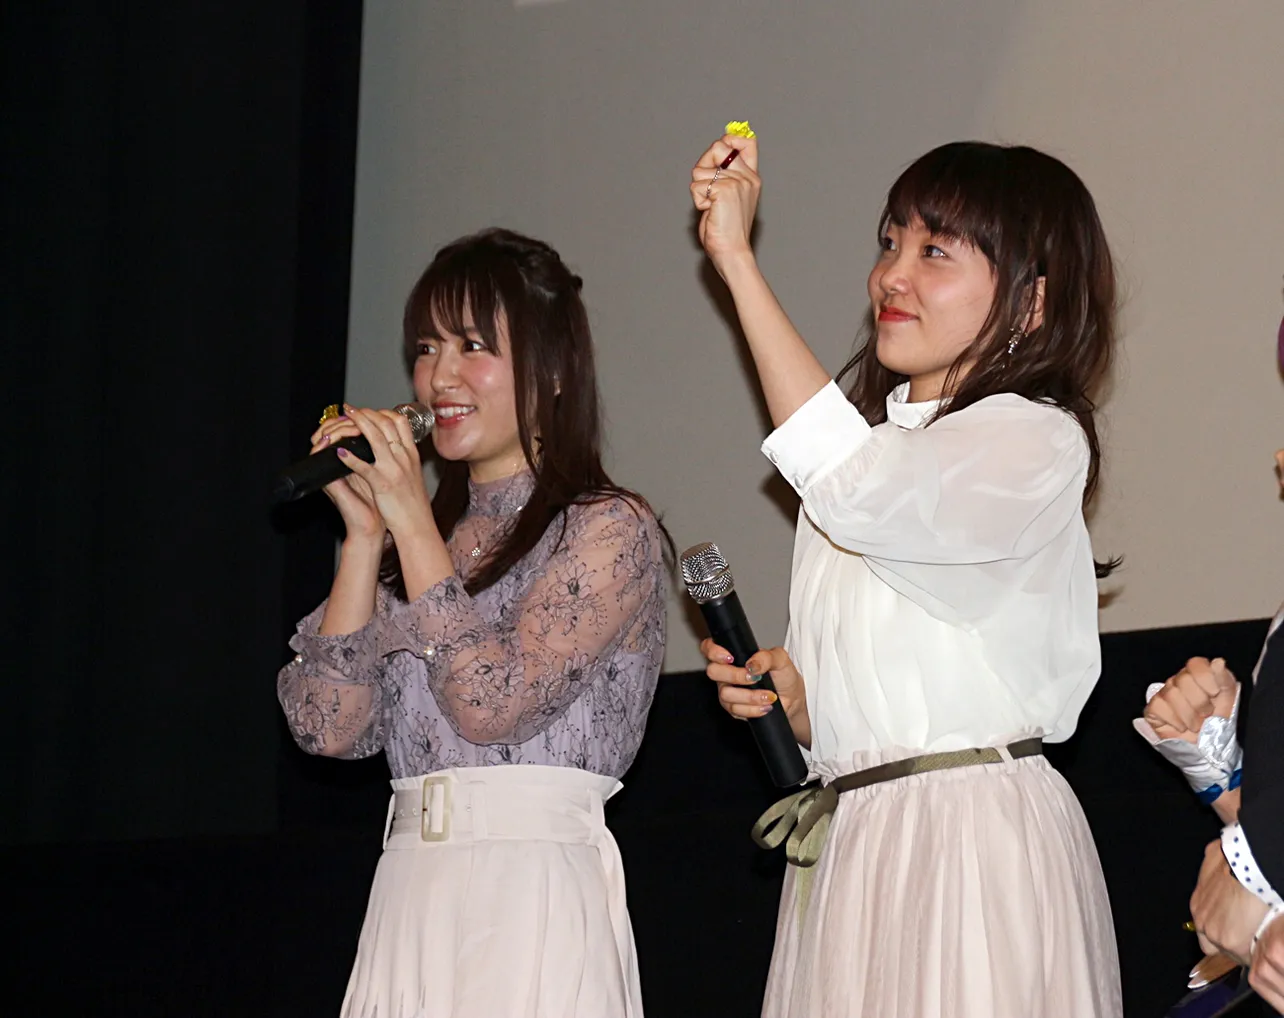 “ミラクルライト”で声援に応える小原好美(右)と小松未可子(左)